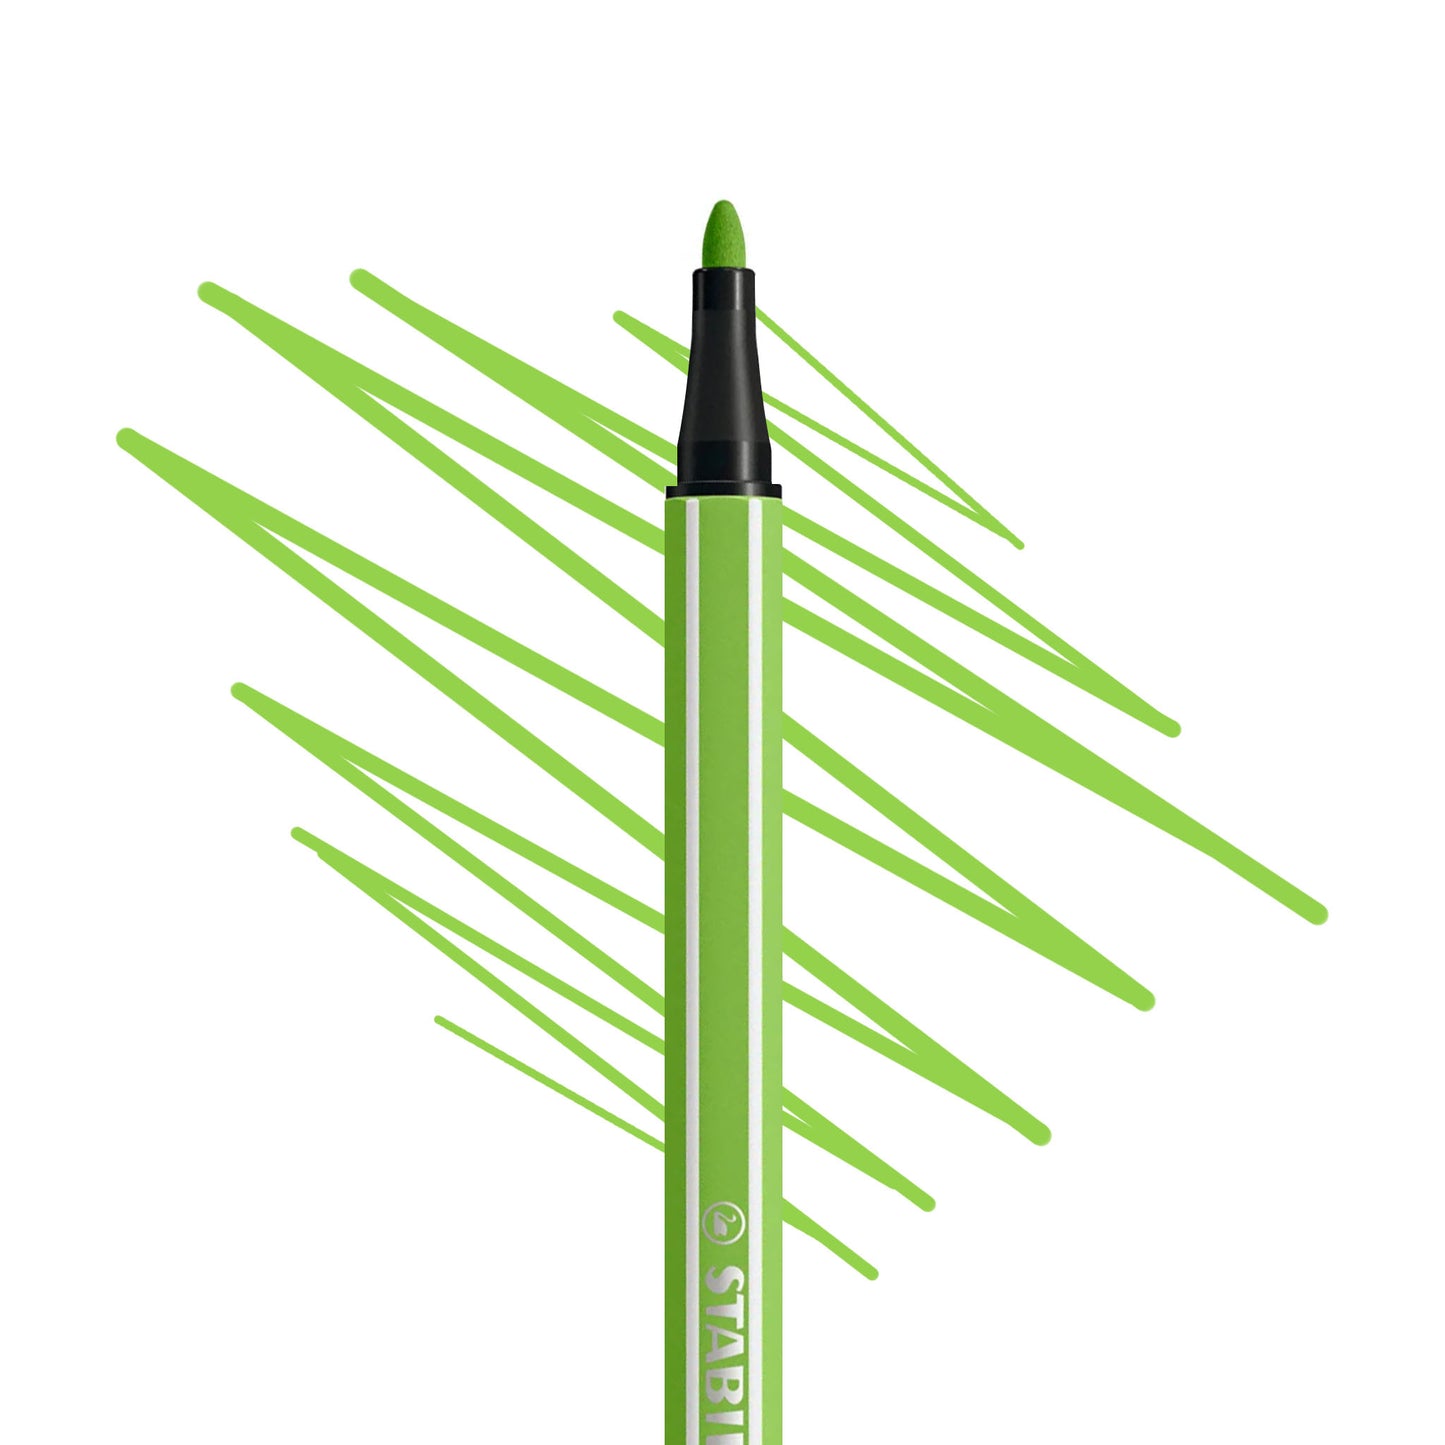 Stabilo 68 Pen art marker in lime green.